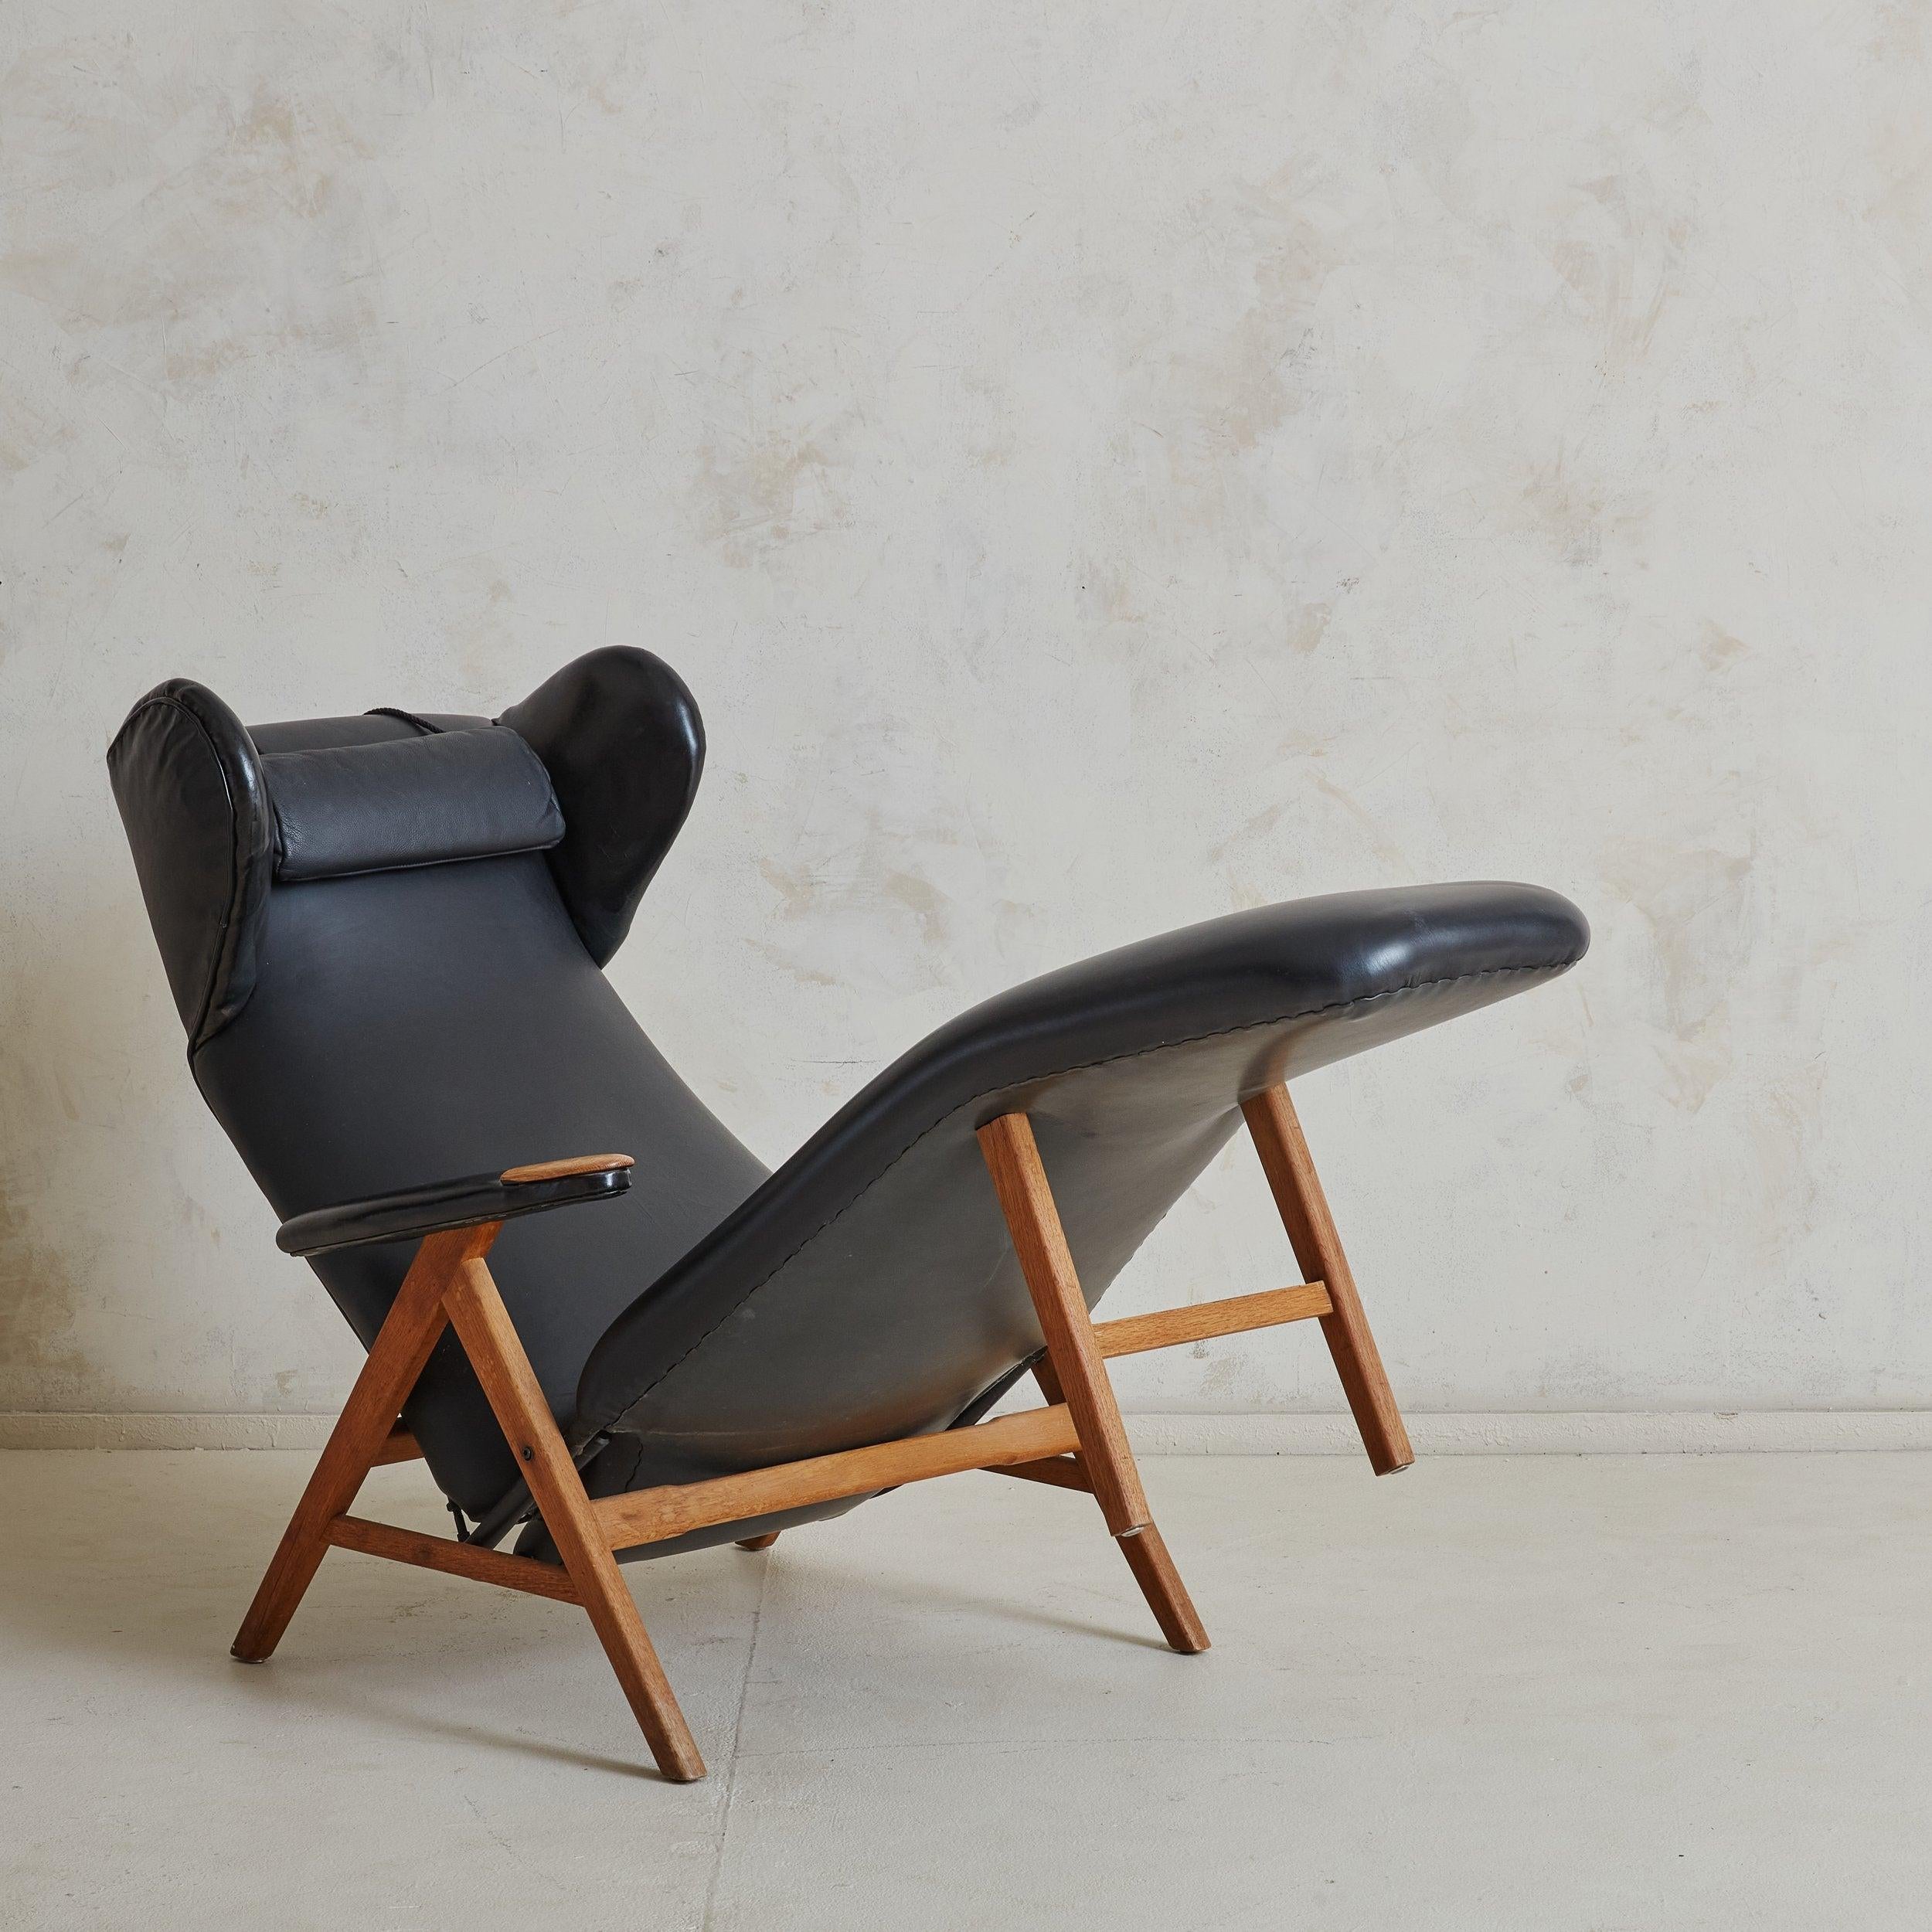 Cette chaise de salon moderne danoise est dotée d'un cadre en chêne miel en forme de 